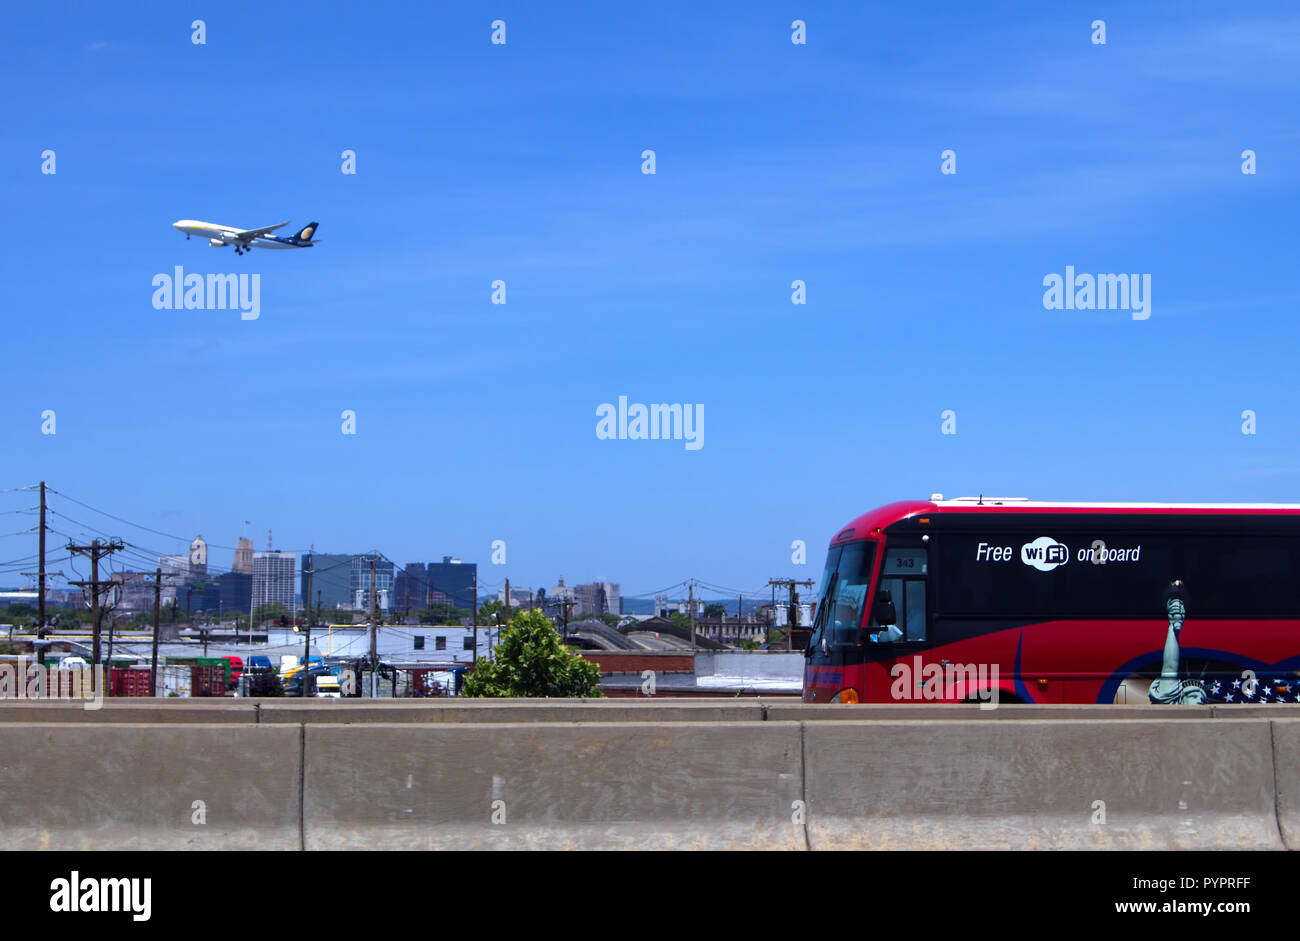 Elizabeth, NJ USA. Juni 2013. Ein modernes Reisen Tour bus und einem fliegenden Flugzeug im Hintergrund sowohl mit kostenlosem Wi-Fi. Stockfoto